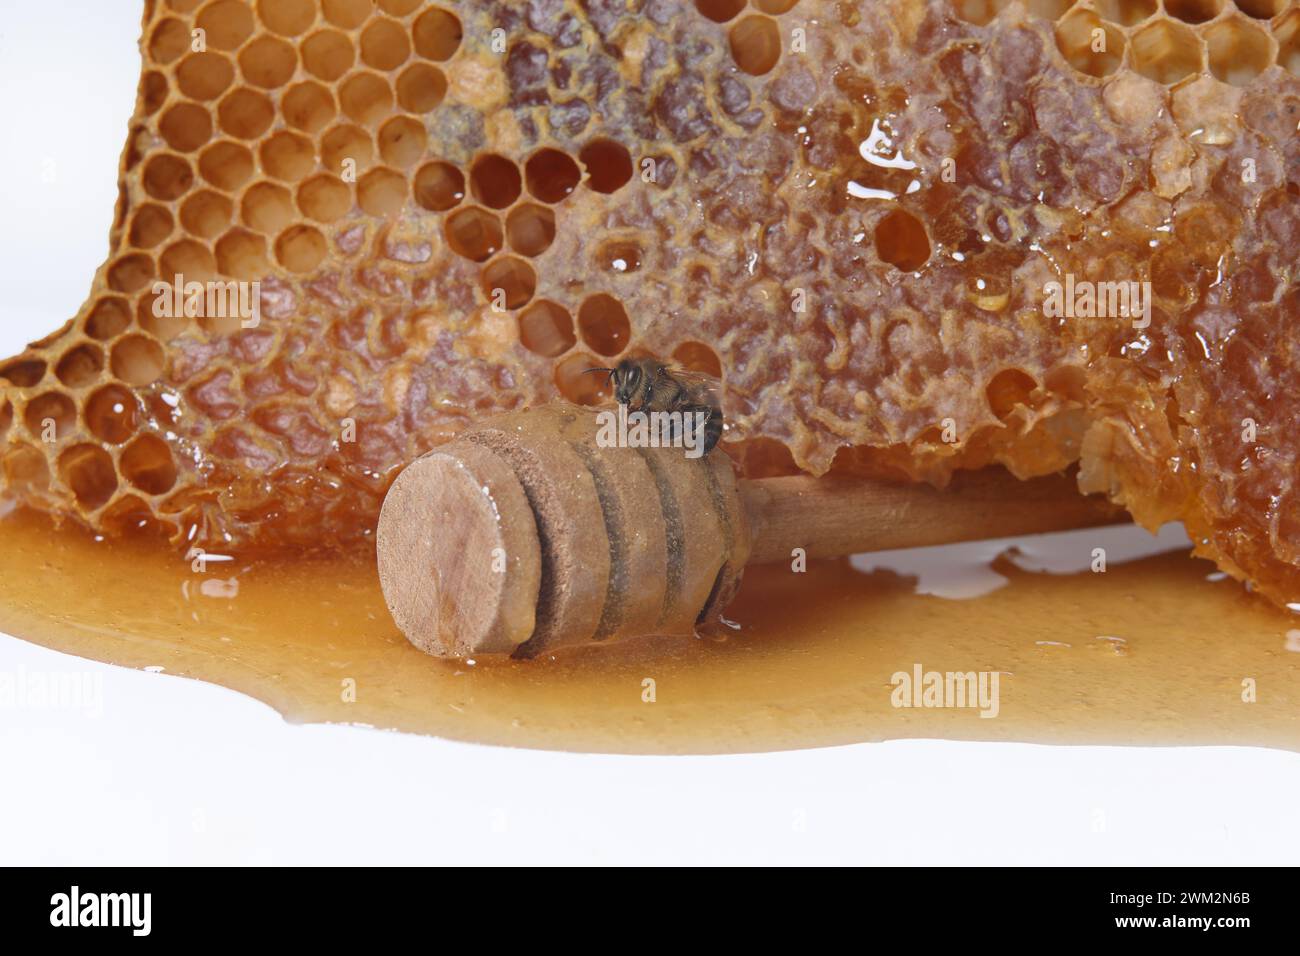 Honey and honeycomb on white background Stock Photo